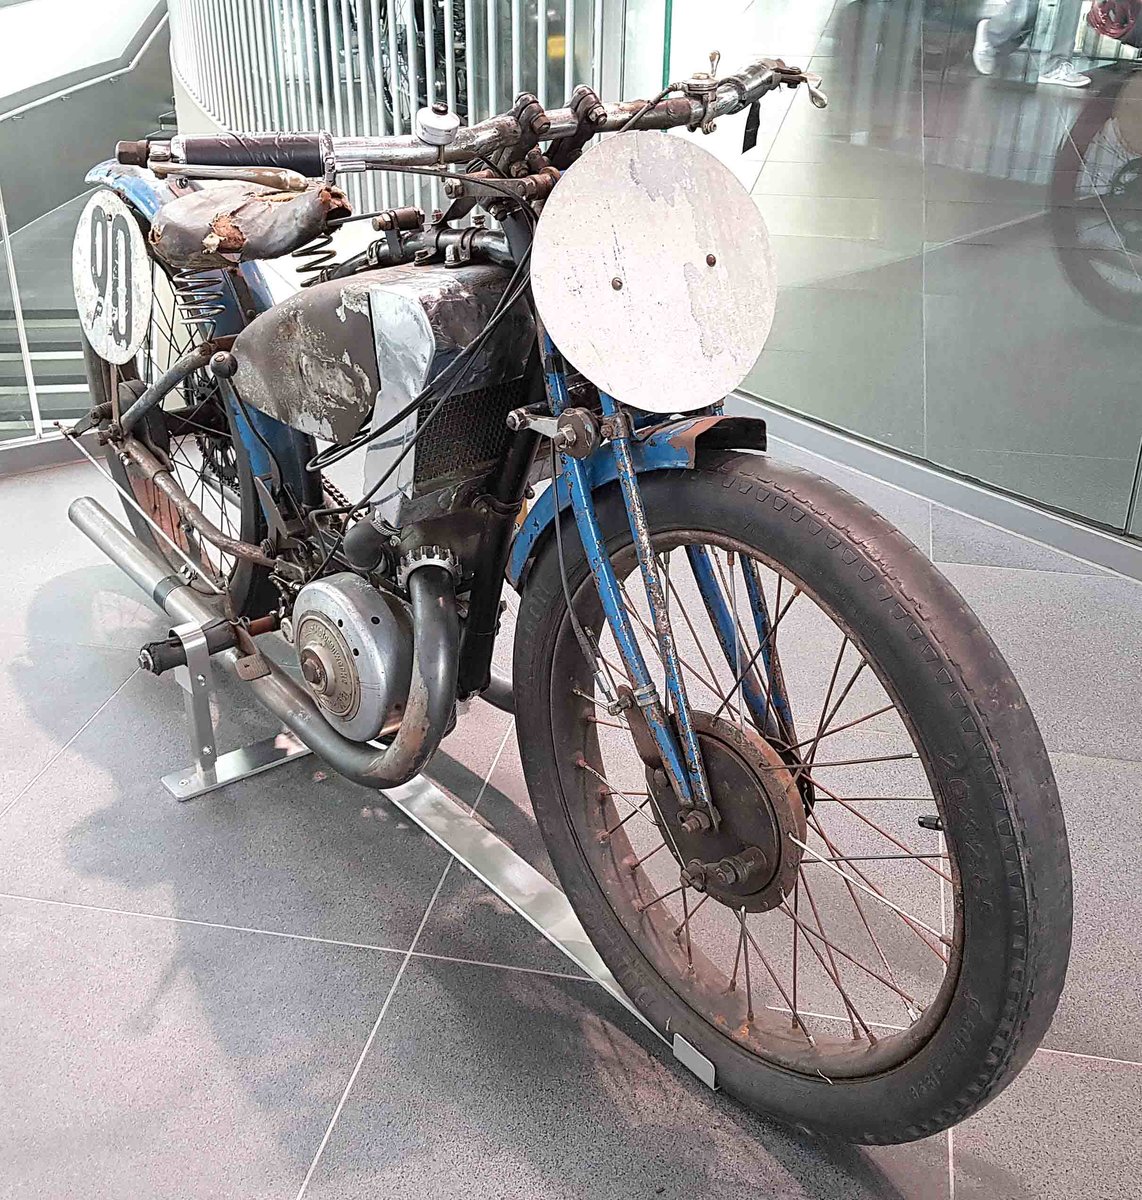 =DKW ORE Rennmotorrad (in unrestauriertem Zustand), Bj. 1928, 248 ccm, 14 PS, gesehen im Audi-Museum Ingolstadt im April 2019.